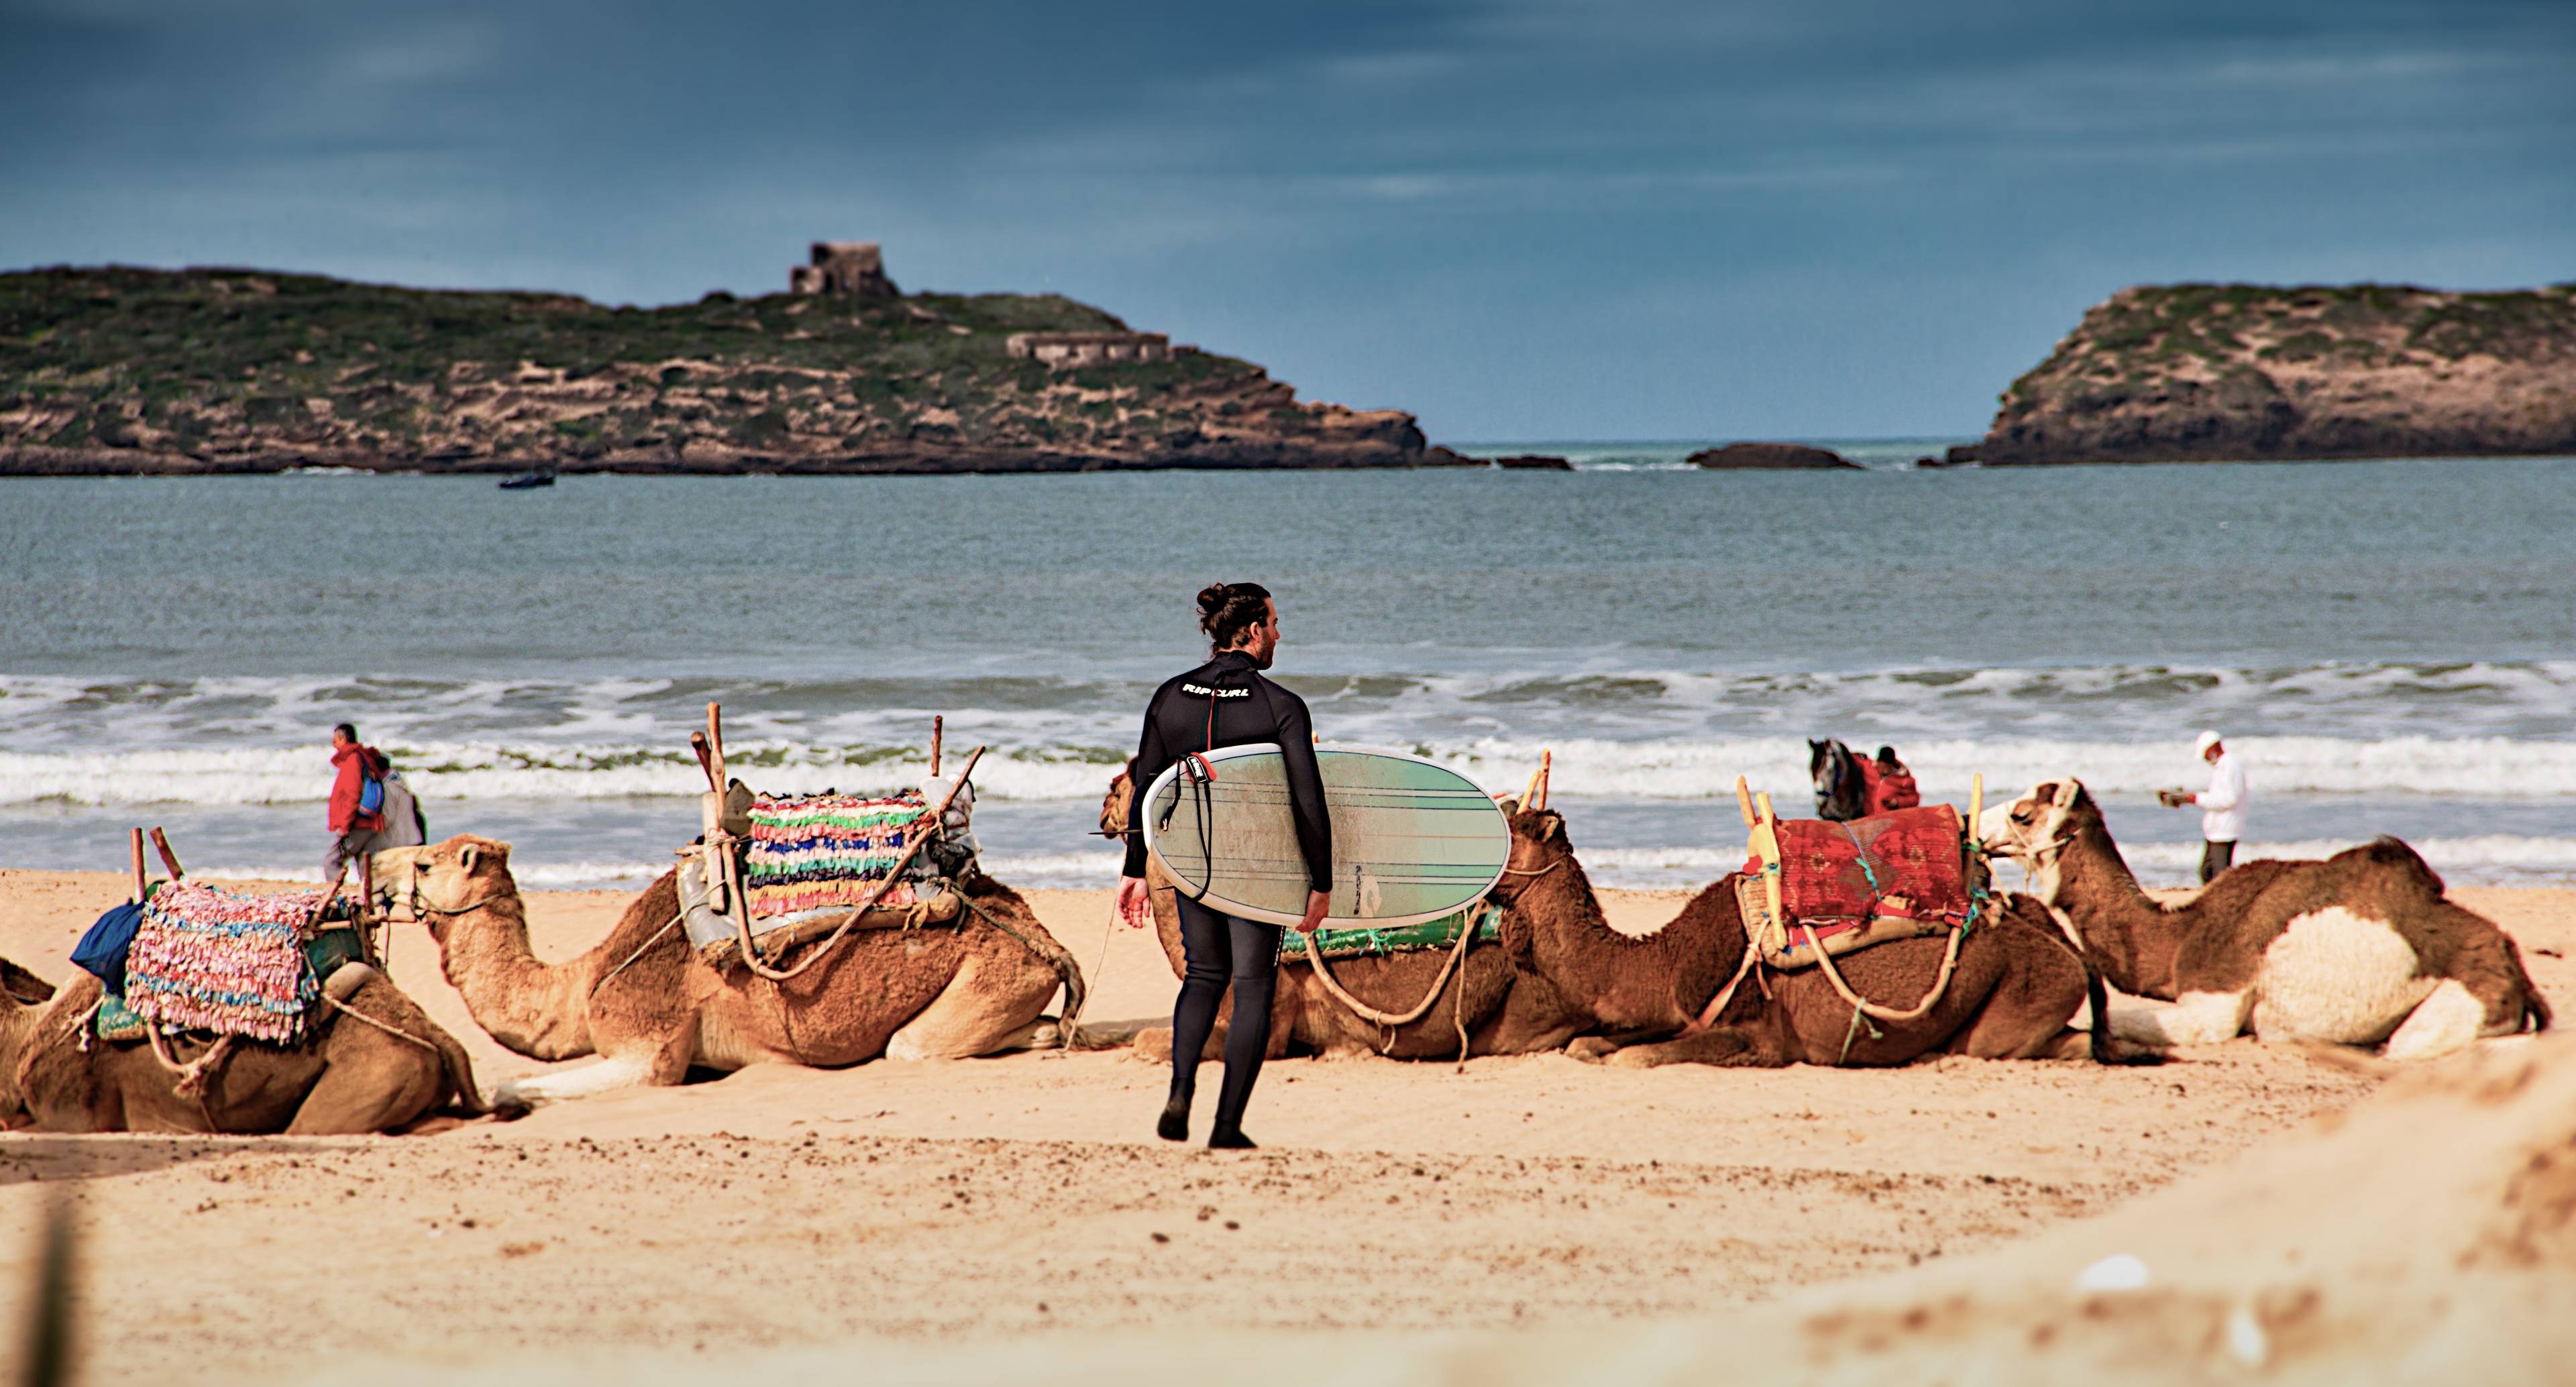 From Tafedna Beach to Essaouira